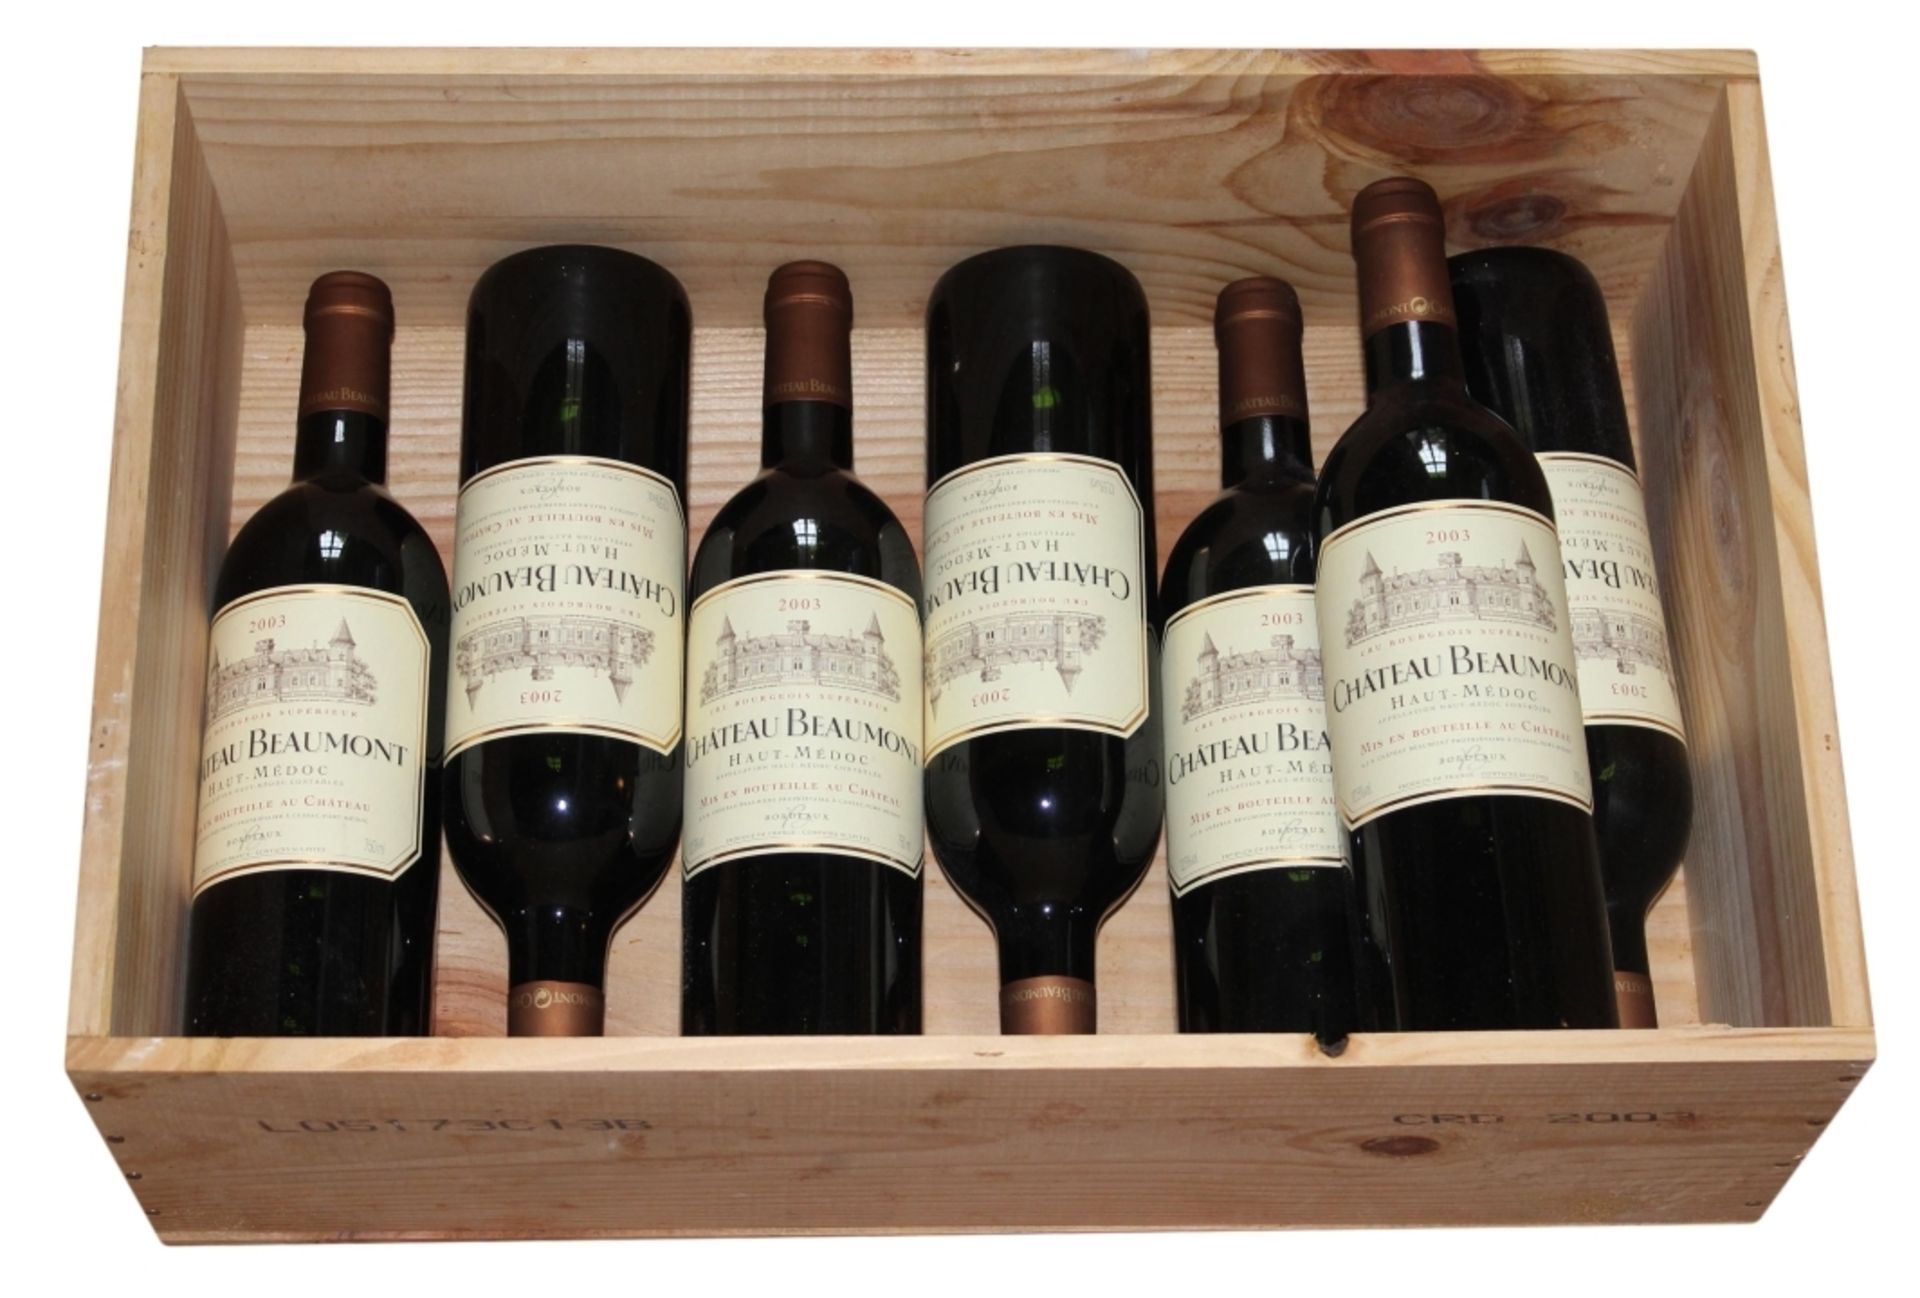 Wein (im Keller gelagert) 7 Flaschen - Chateau Beaumont Haut-Médoc 2003 Cru Bourgeois